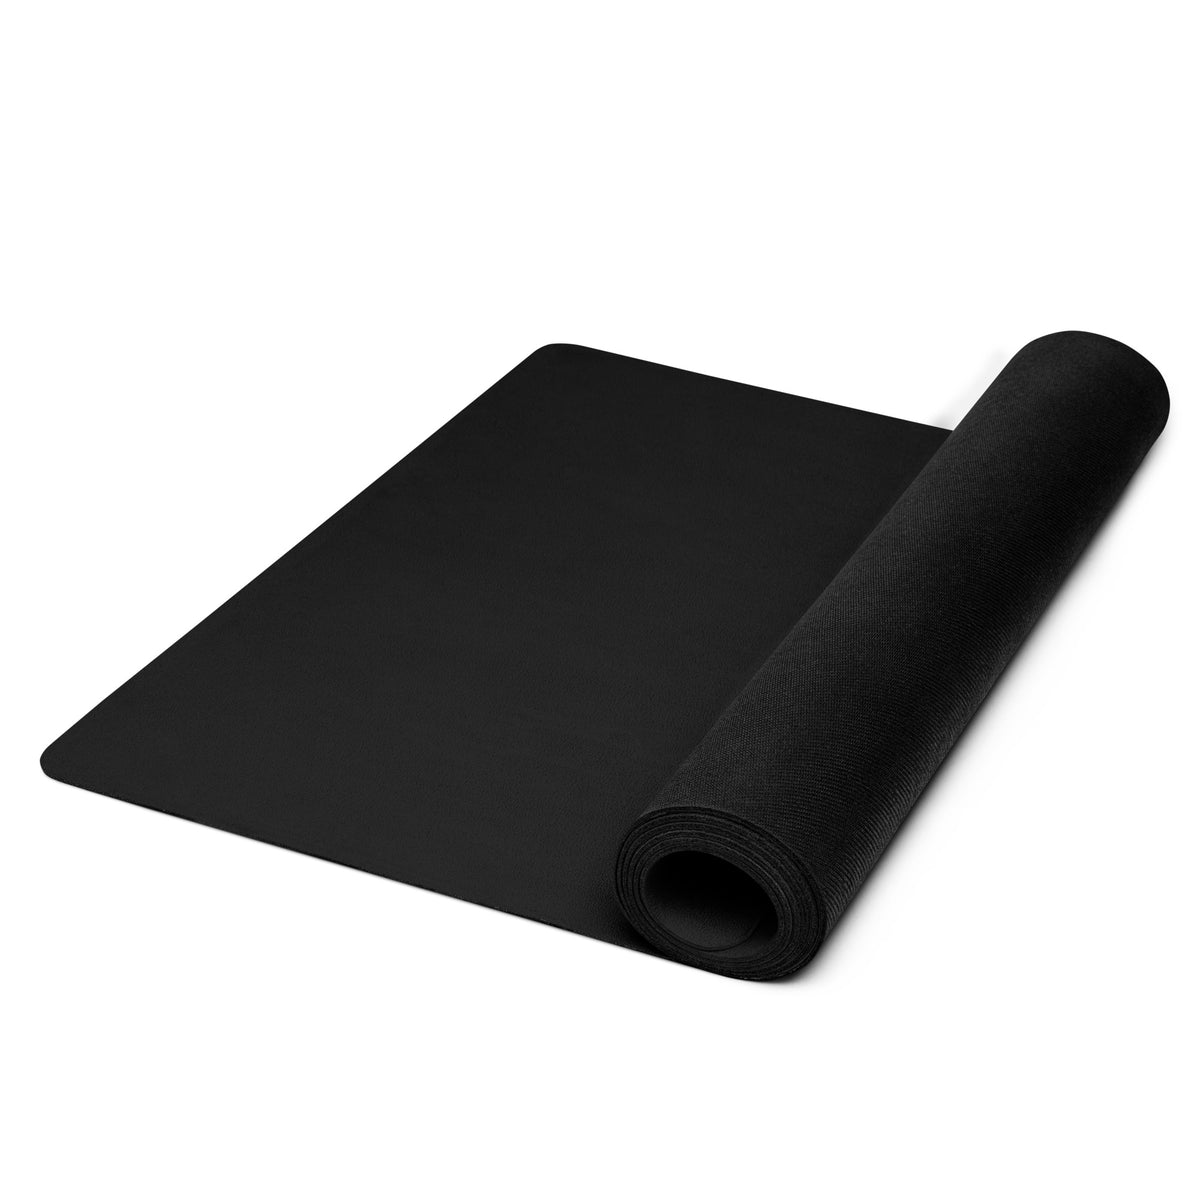 Black Upstormed Yoga Mat